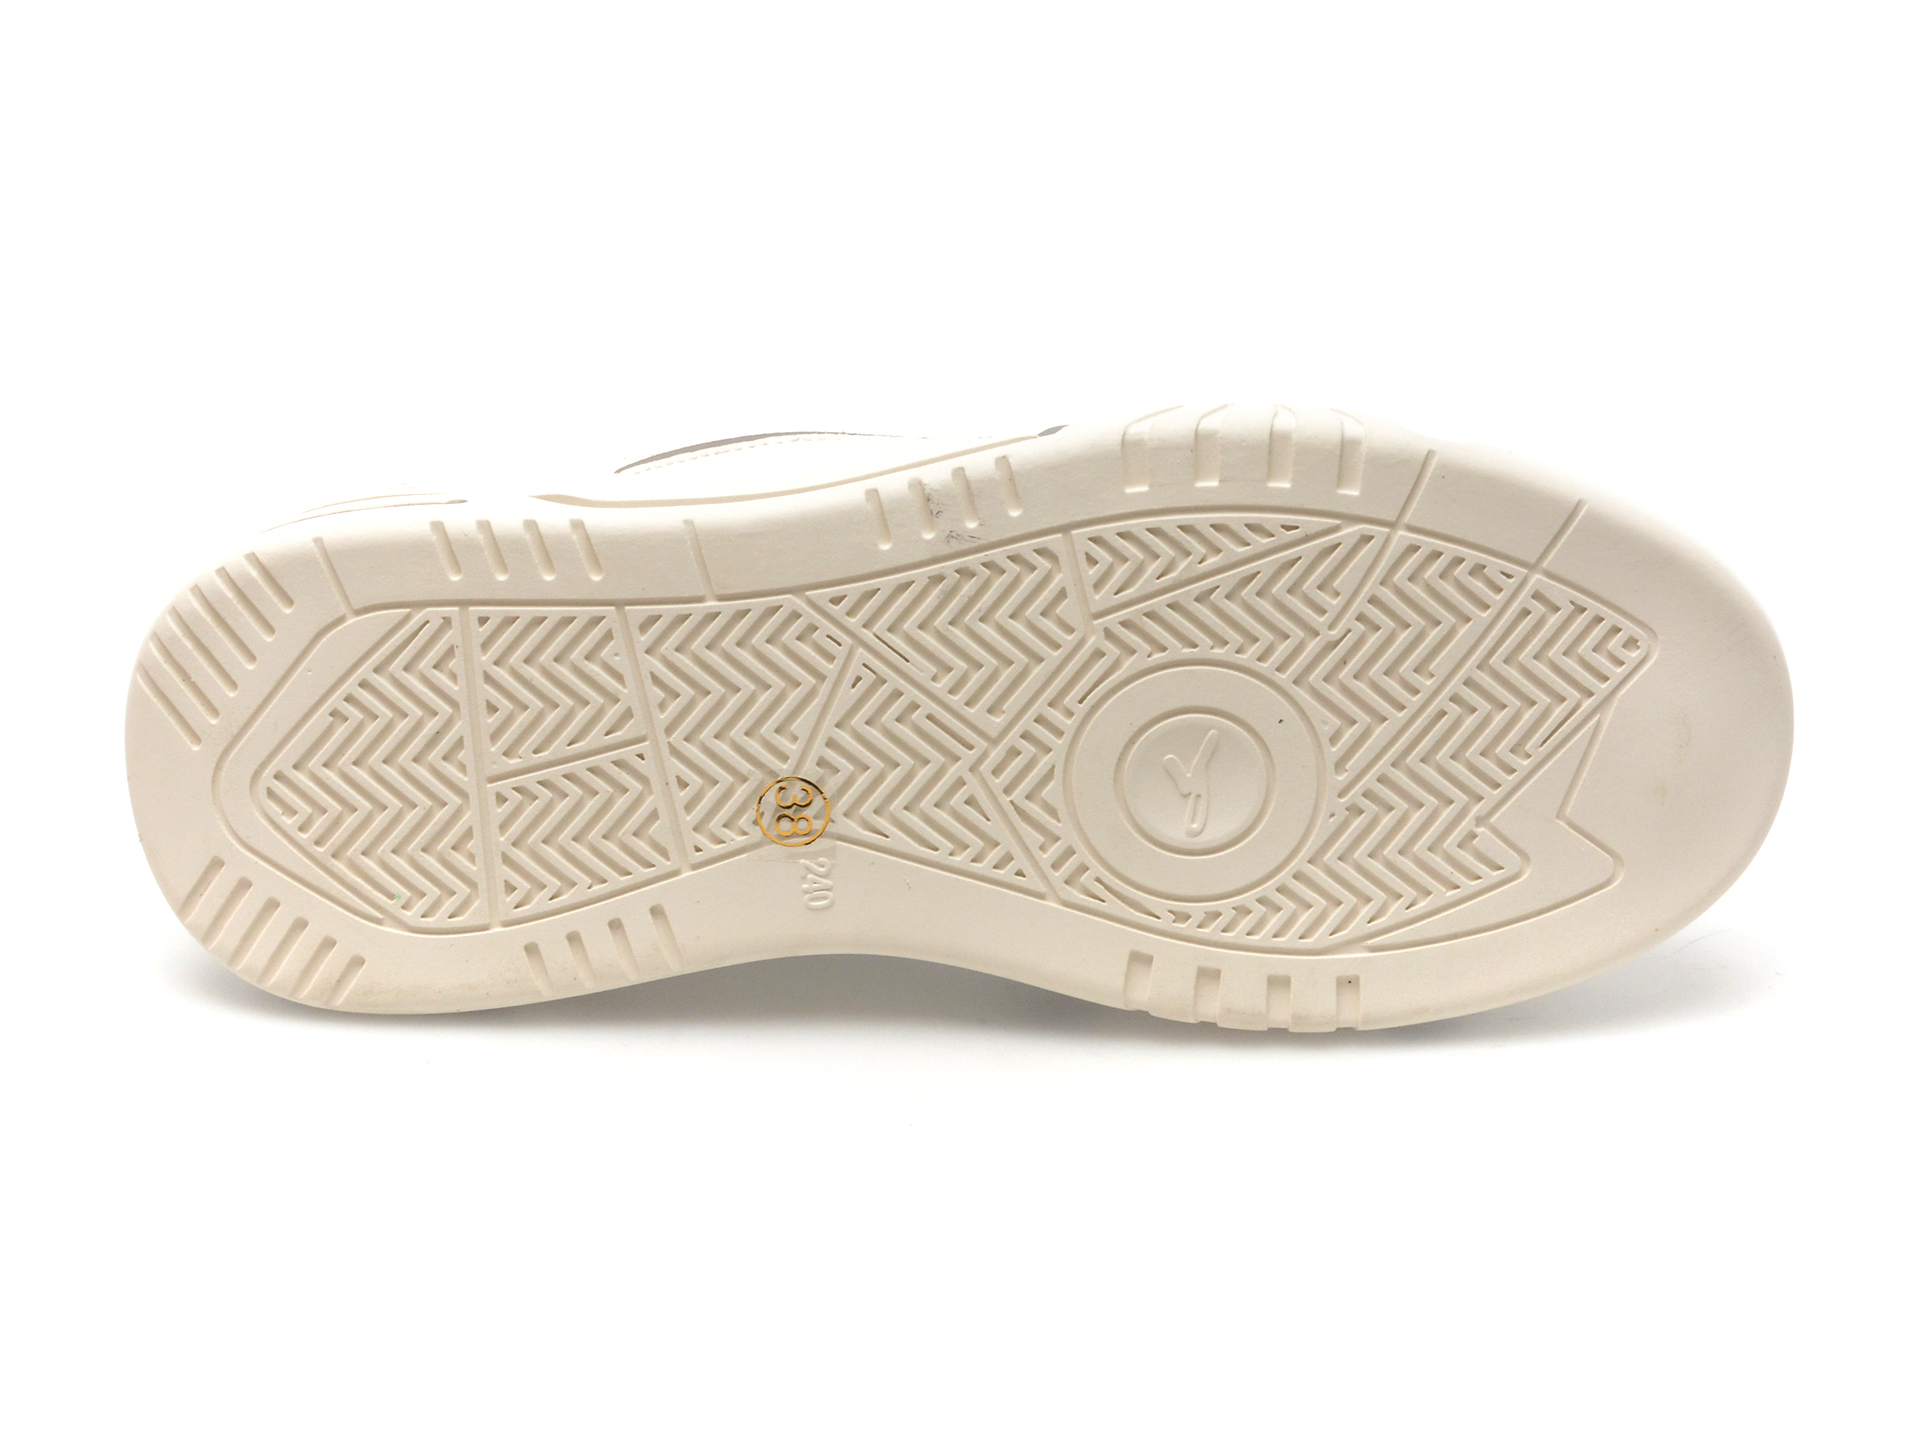 Pantofi EPICA gri, HY7067, din piele naturala